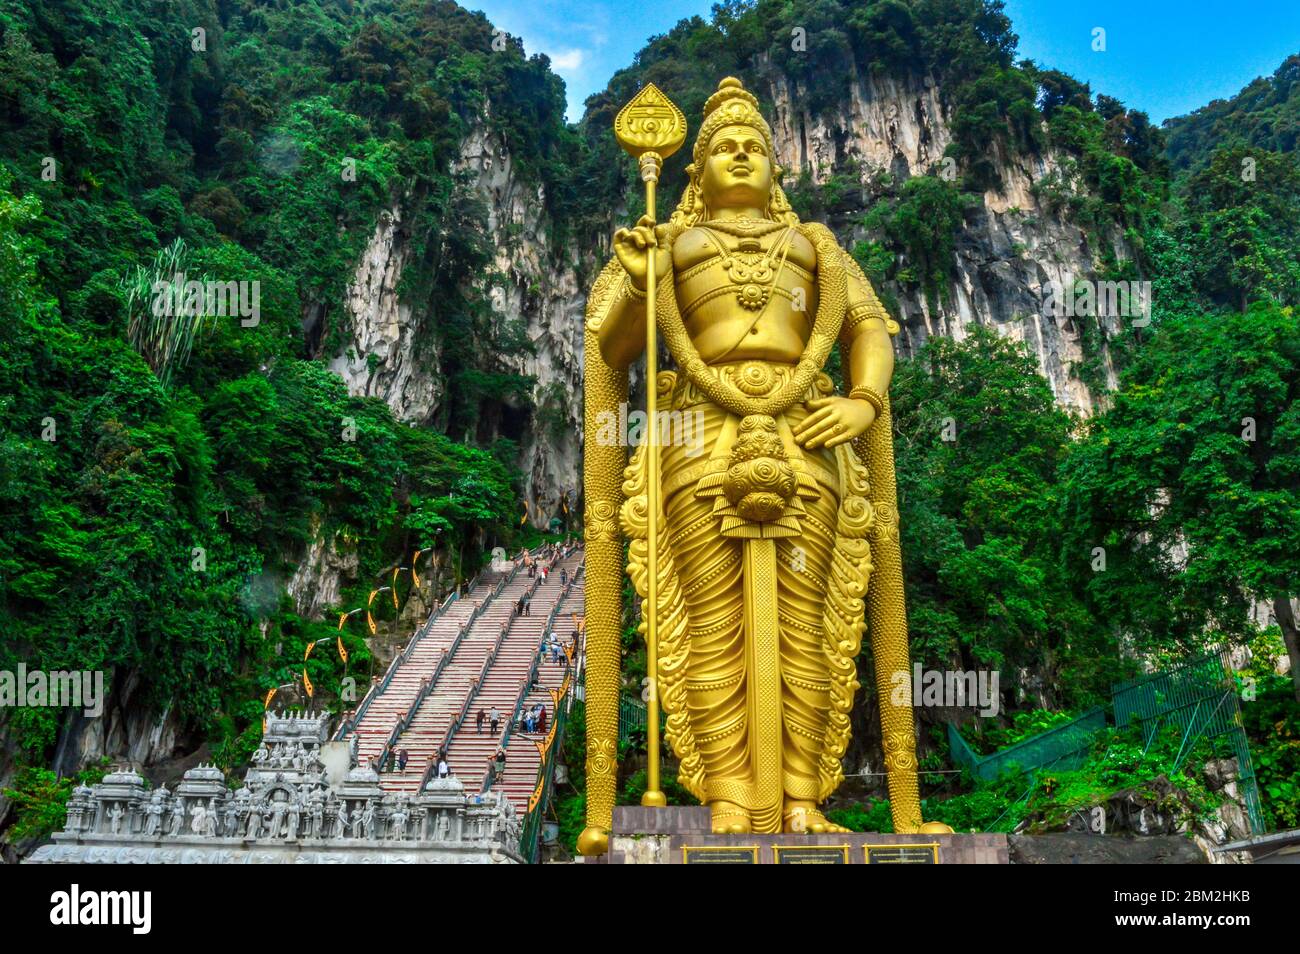 Lord Murugan Statue ist die höchste Statue einer Hindu Gottheit in Malaysia. Reisen Sie nach Malaysia. Hinduistische Statue in Malaysia. Beliebt in der Welt - Bild Stockfoto